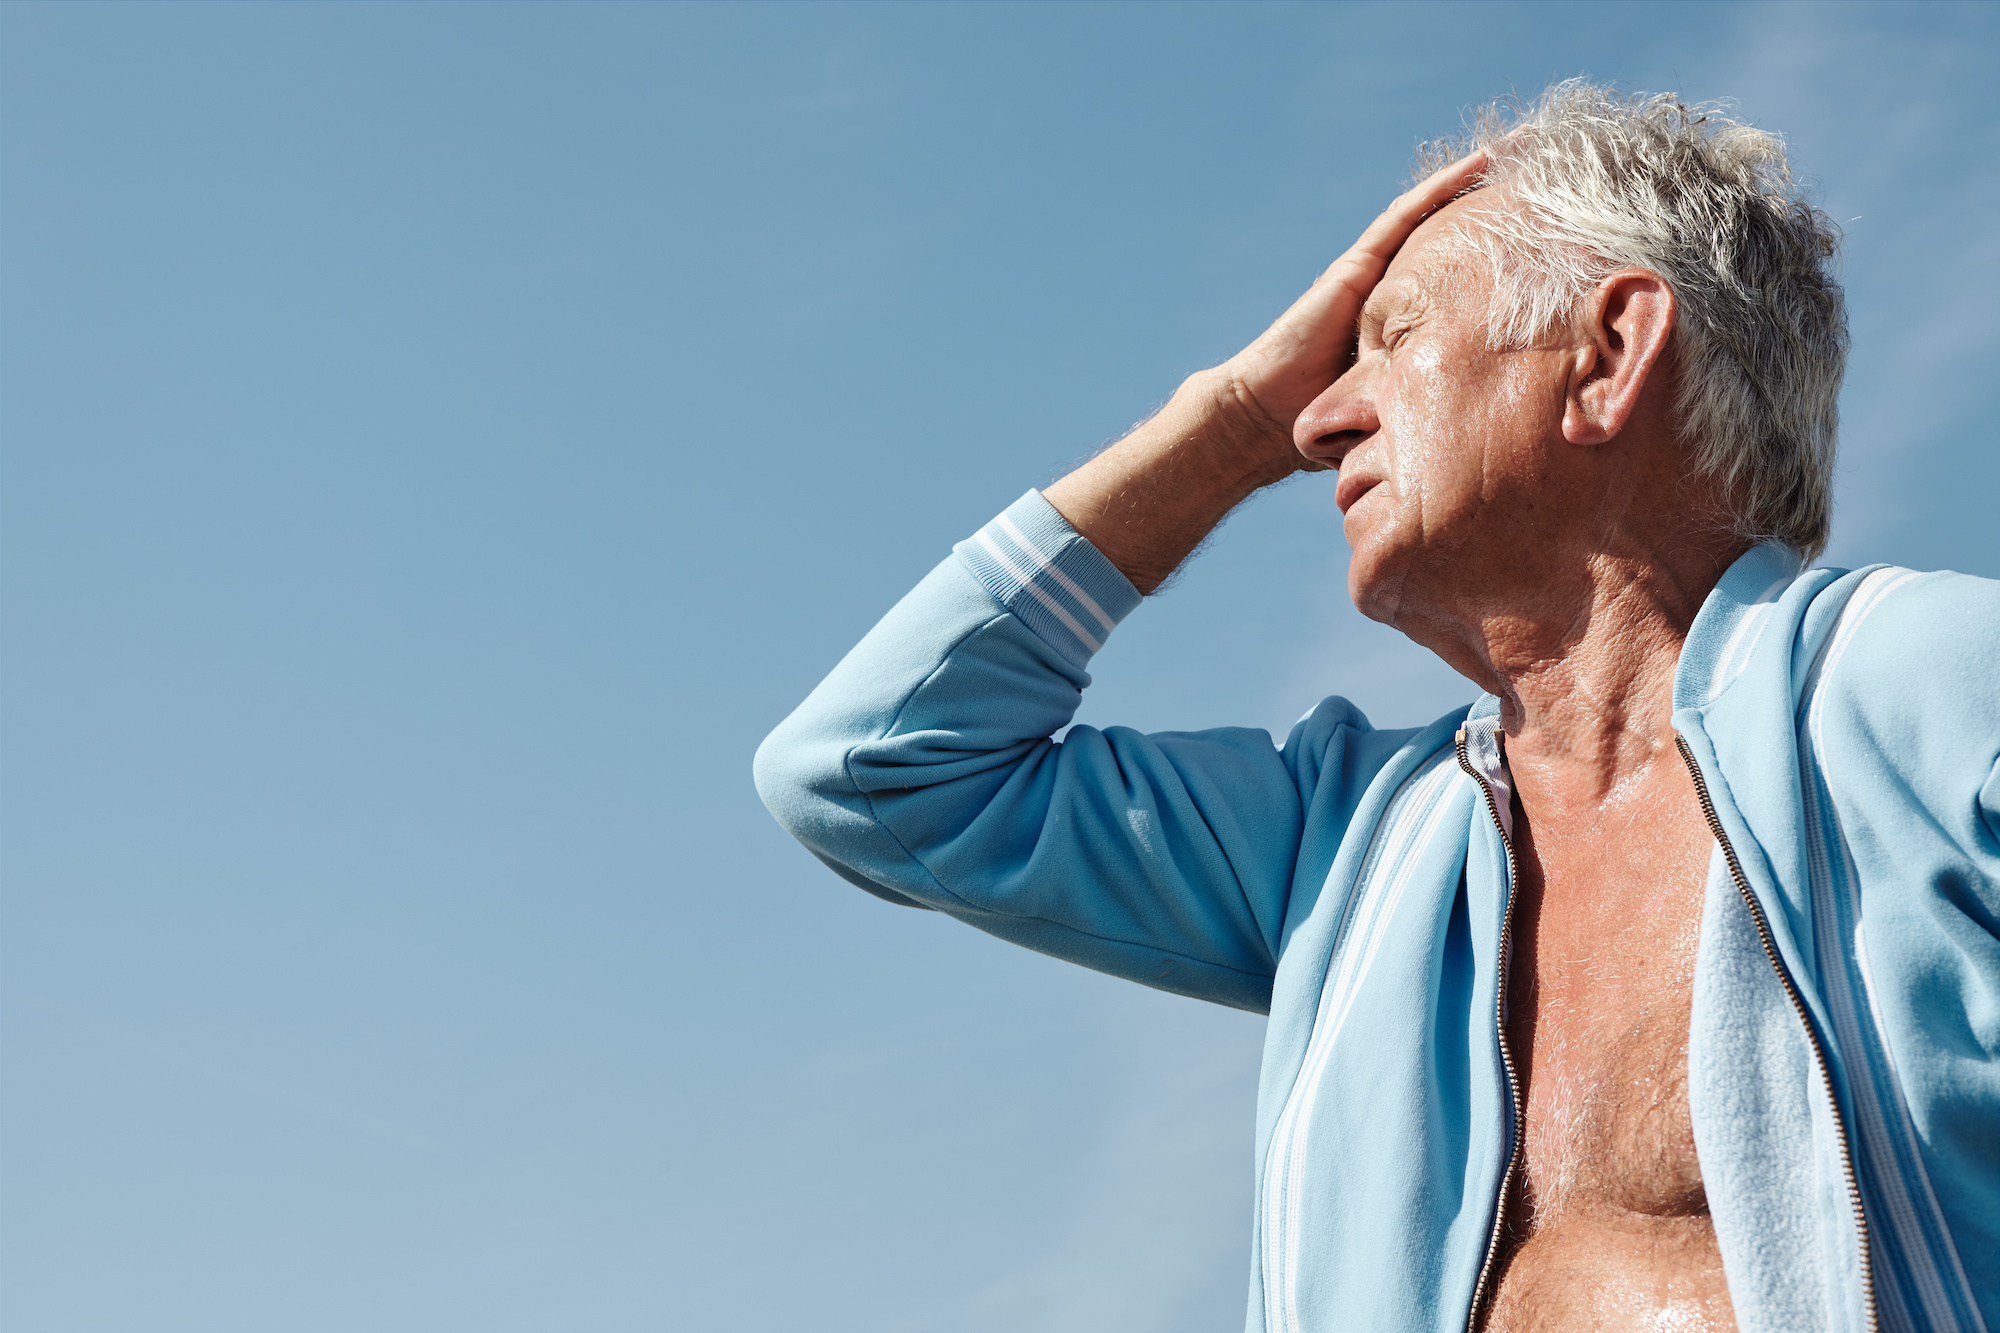 Les personnes âgées sont particulièrement vulnérables à la déshydratation. © Pierre, Adobe Stock